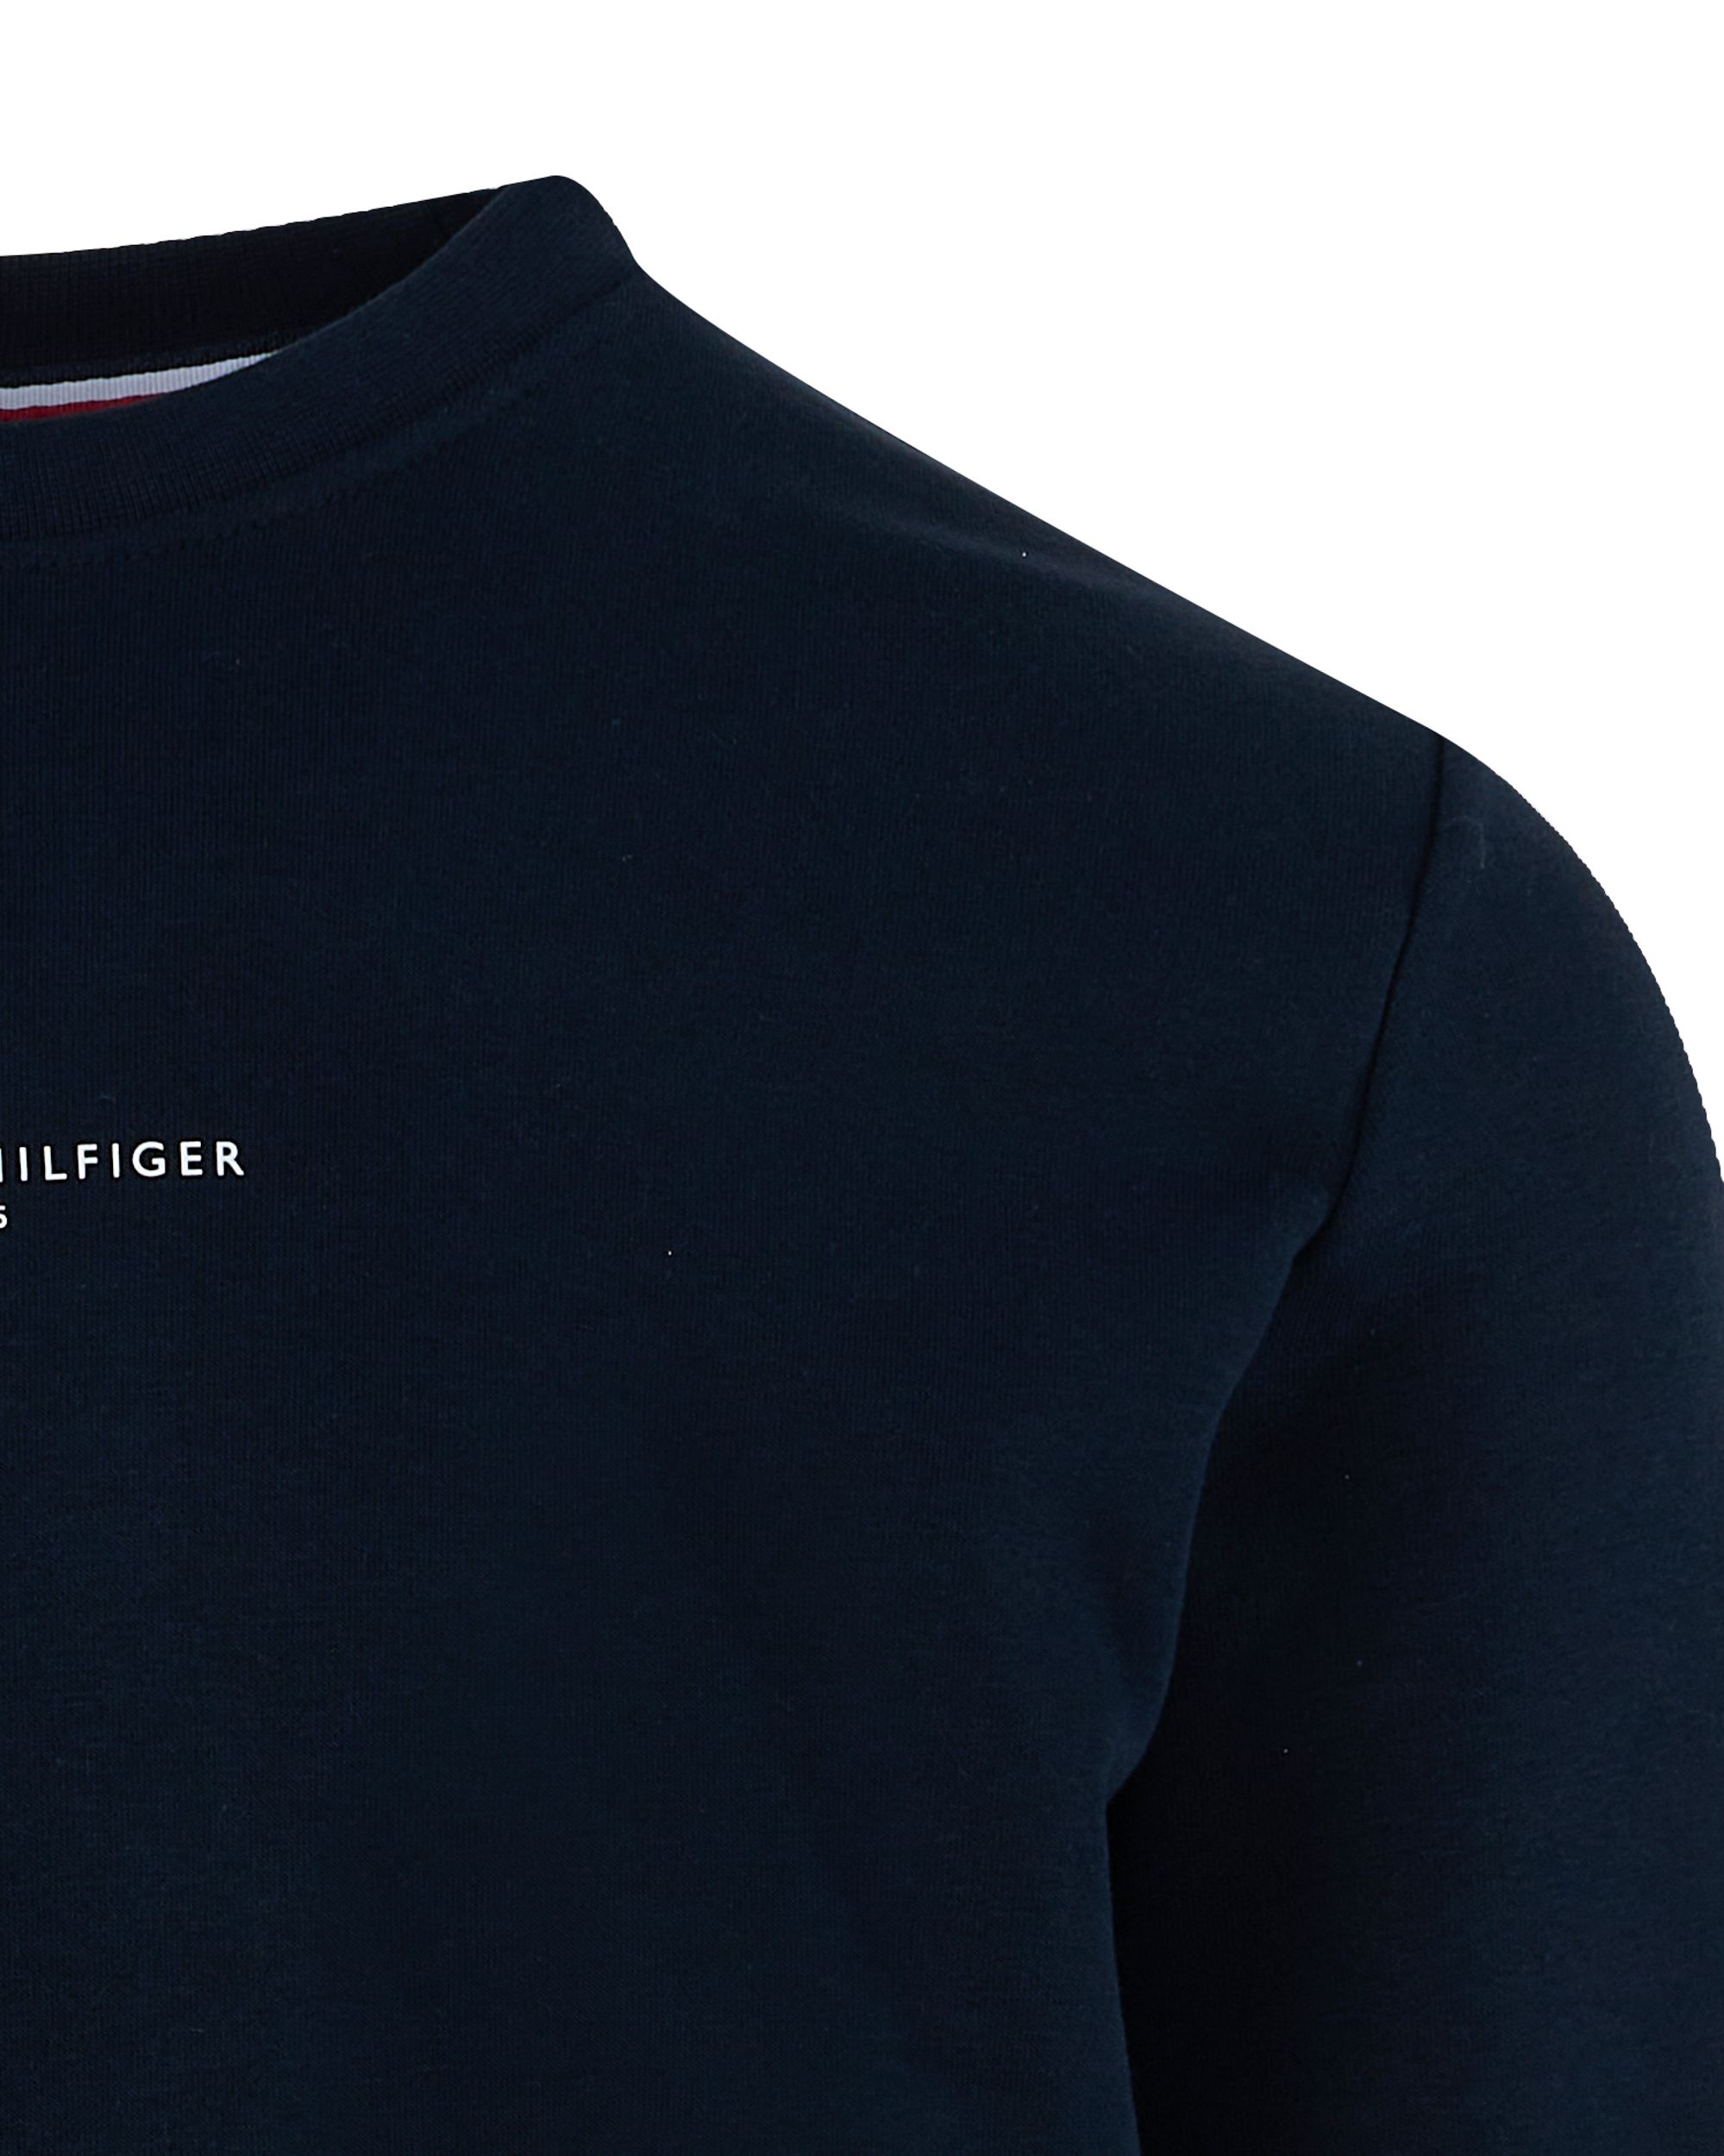 Tommy Hilfiger Menswear Sweater Donker grijs 093020-001-L